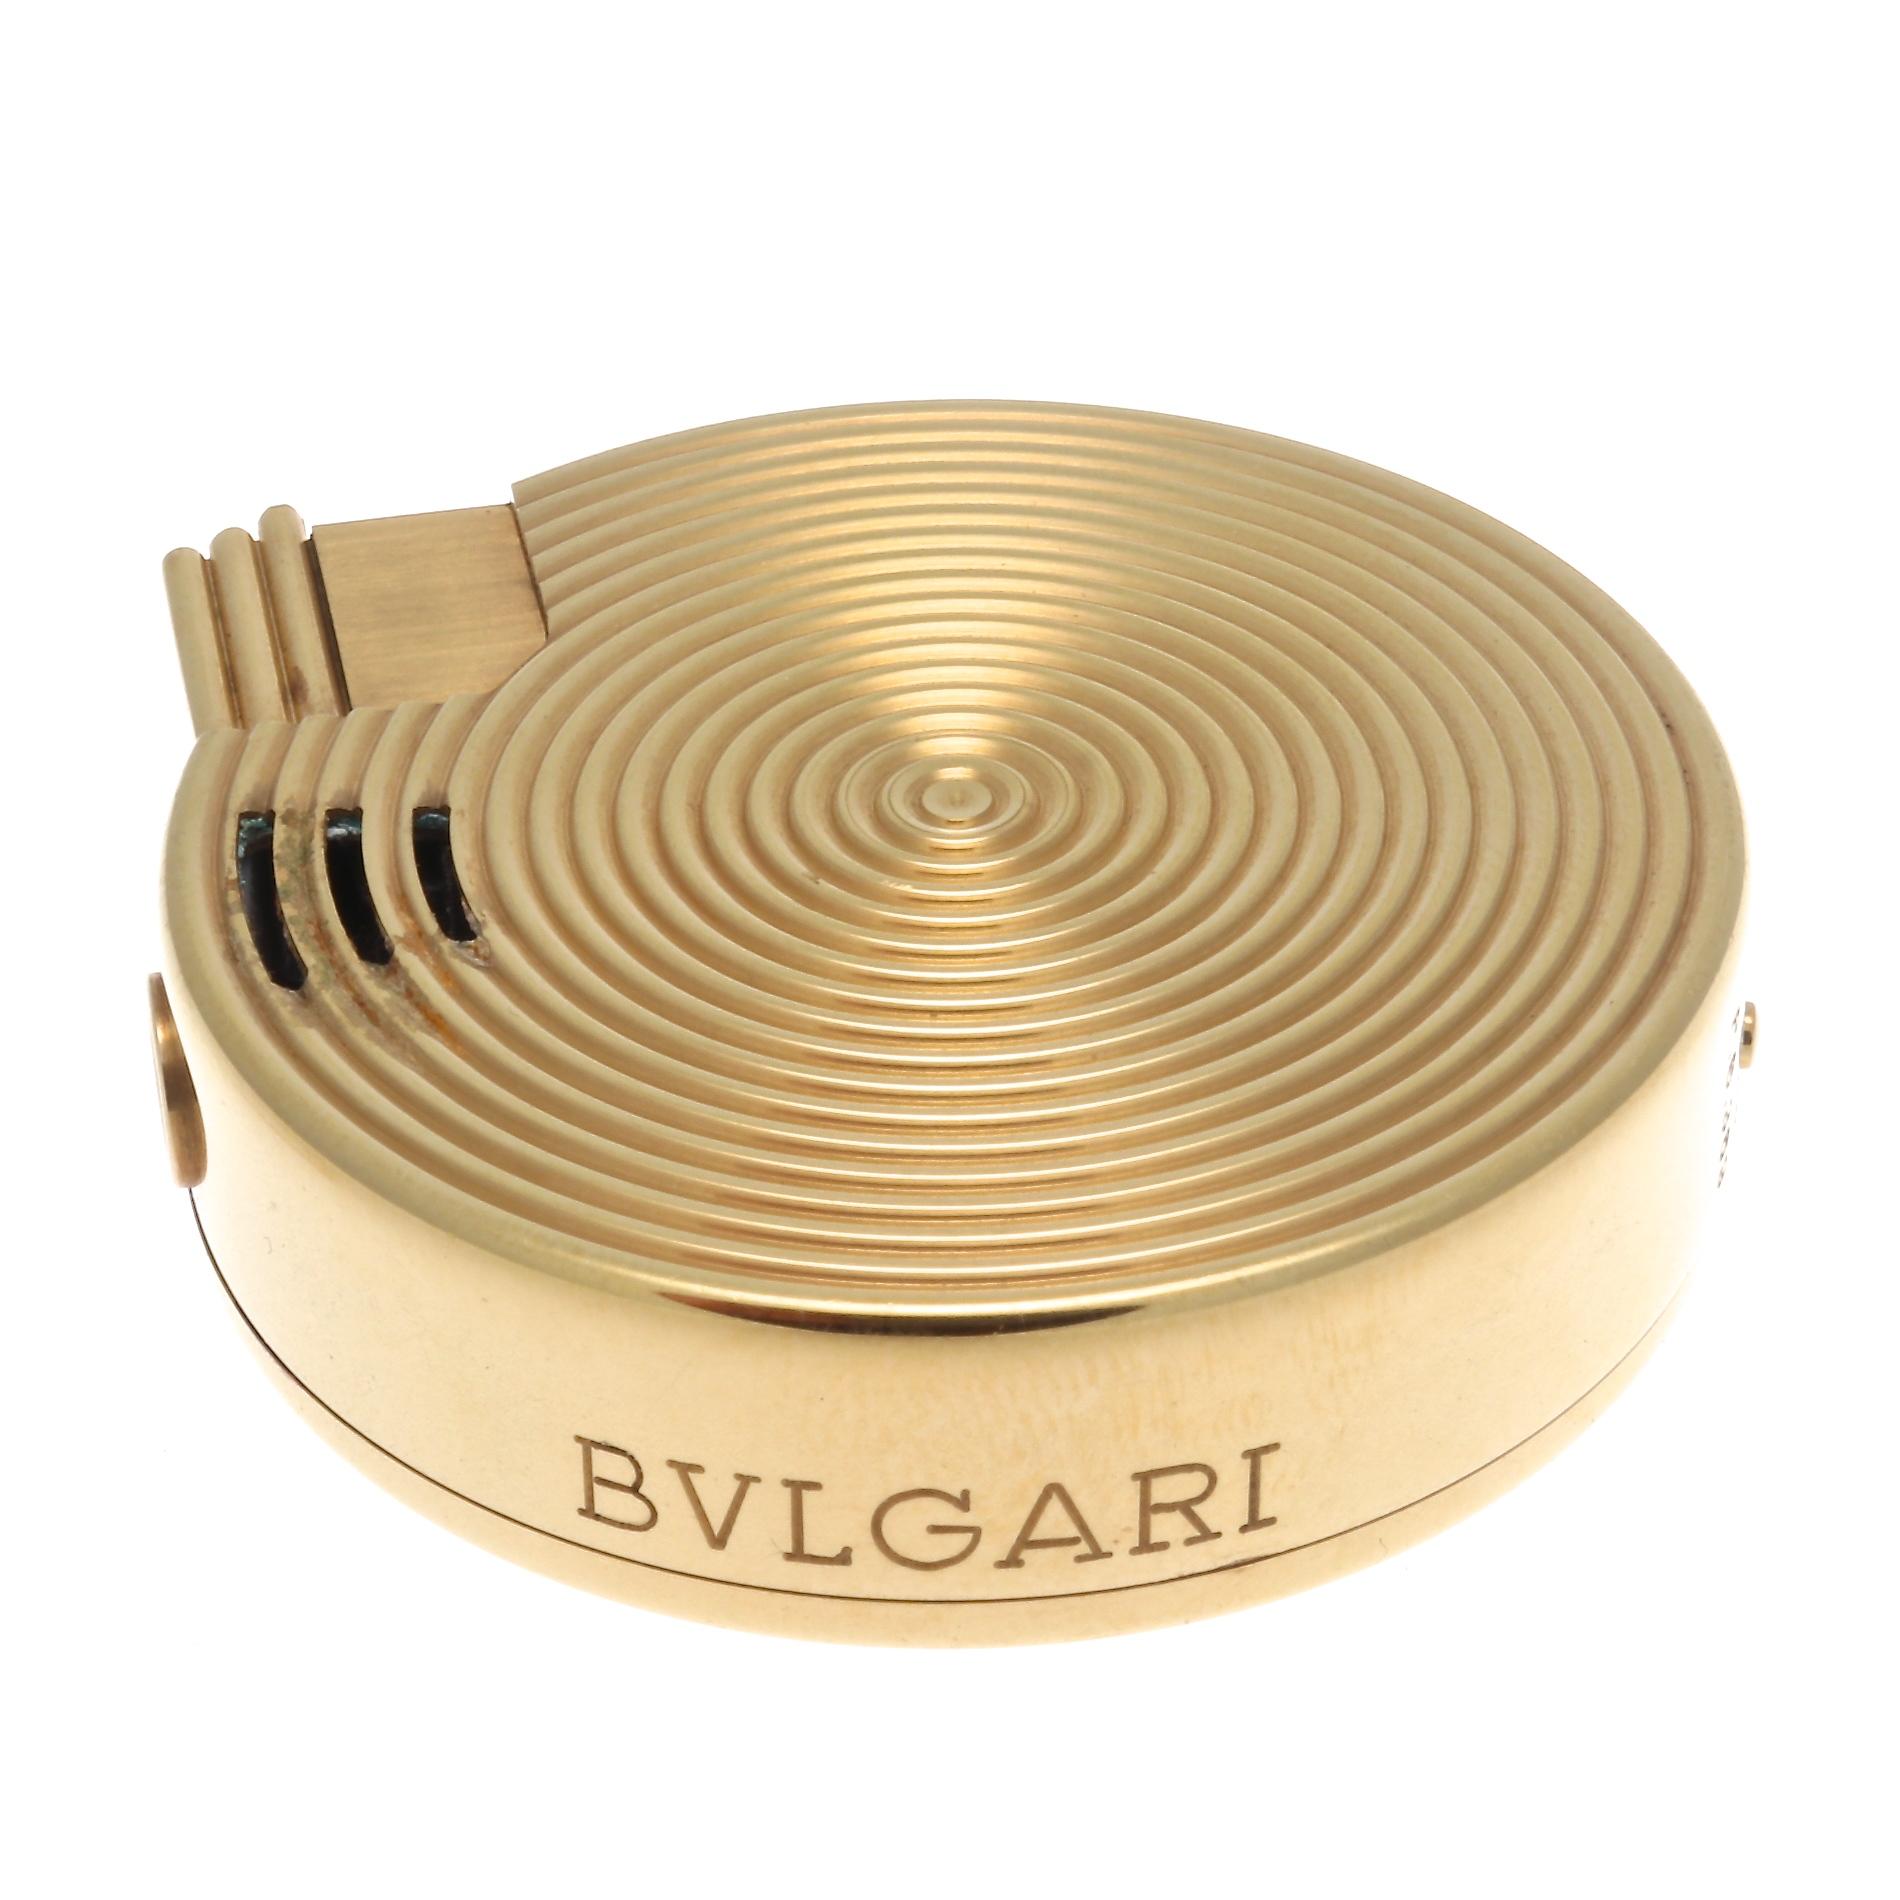 Eine hypnotische Kreation von Bulgari. Ein weiteres einzigartiges Design:: das der Kollektion hinzugefügt werden kann. Entworfen in 18 Karat Gold. Signiert Bvlgari und nummeriert.